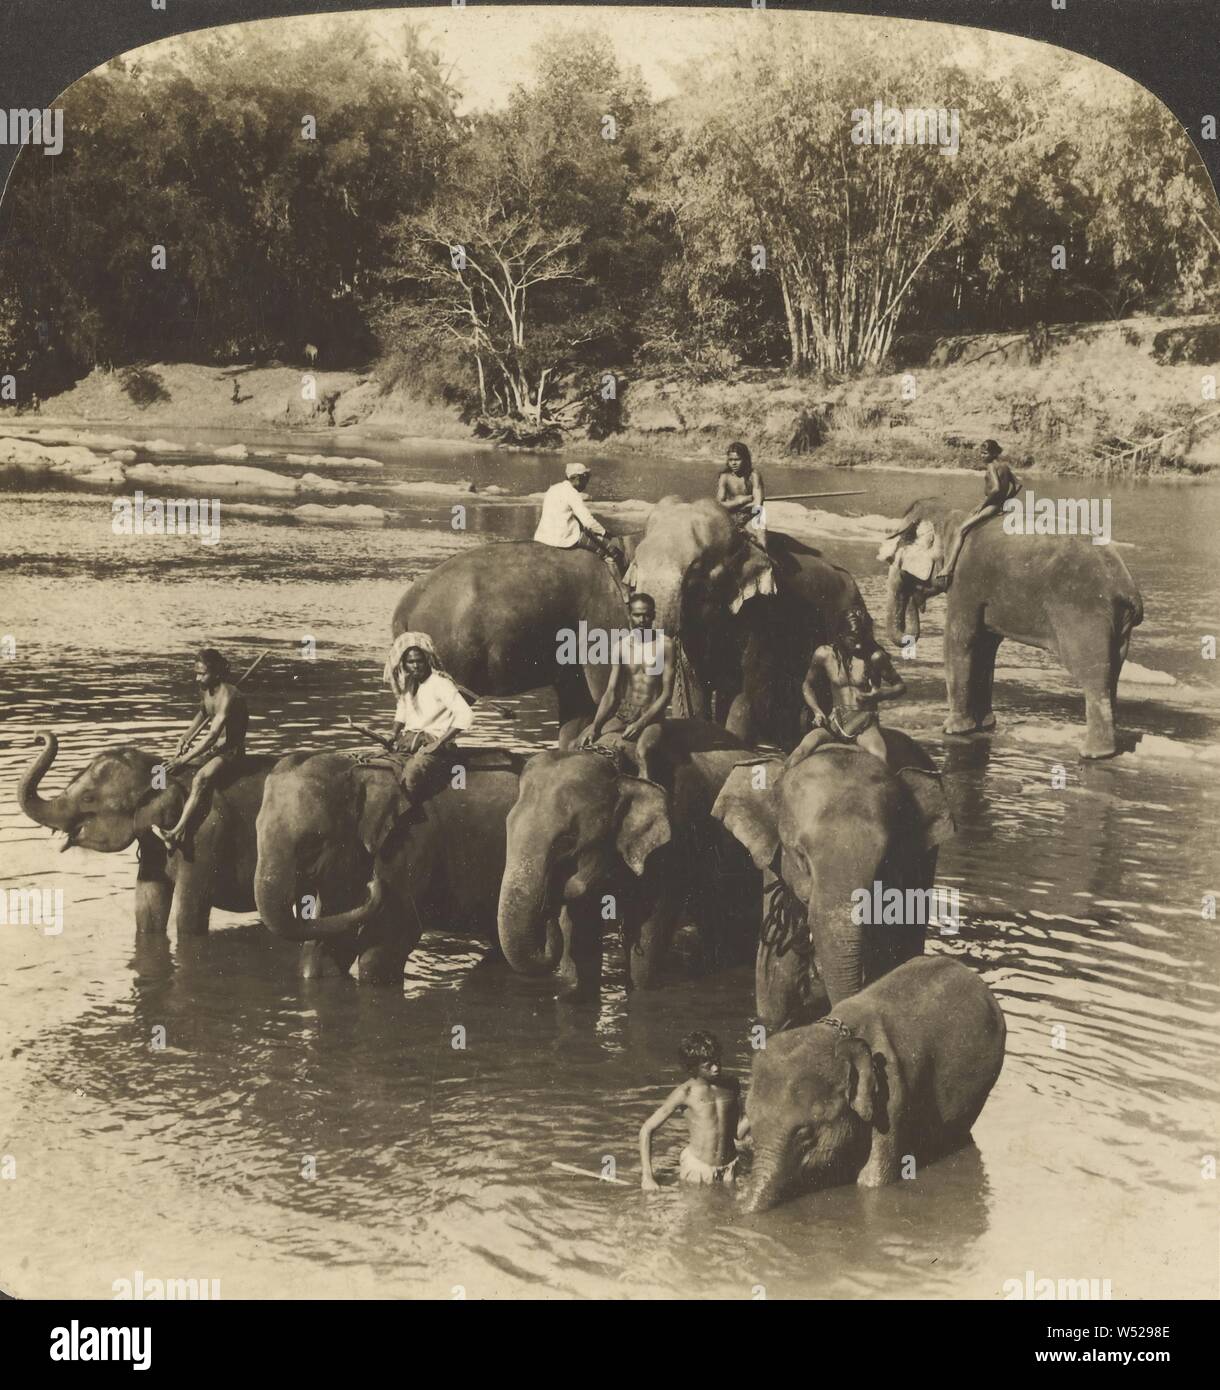 Elefantenpfleger fahren eine Herde von riesigen Tiere in einen Fluss zu trinken, Kandy, Ceylon, Hawley C. White Company 1907, Silbergelatineabzug Stockfoto